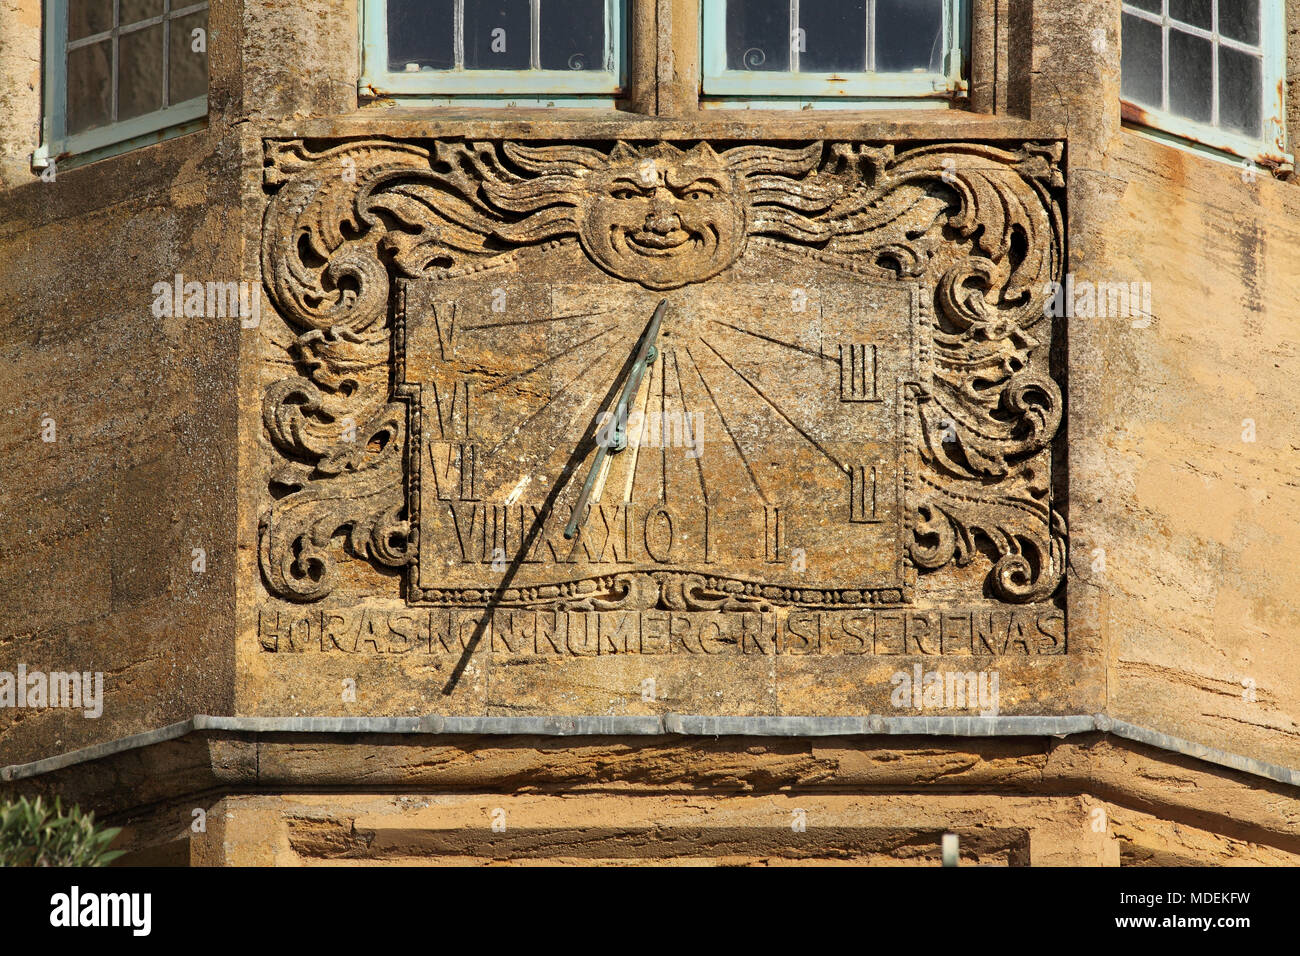 Un cadran solaire sur le mur de la maison, avec chiffres romains, une image anthropomorphique du soleil, et volutes tourbillonnantes, Lyme Regis, dans le Dorset. Banque D'Images